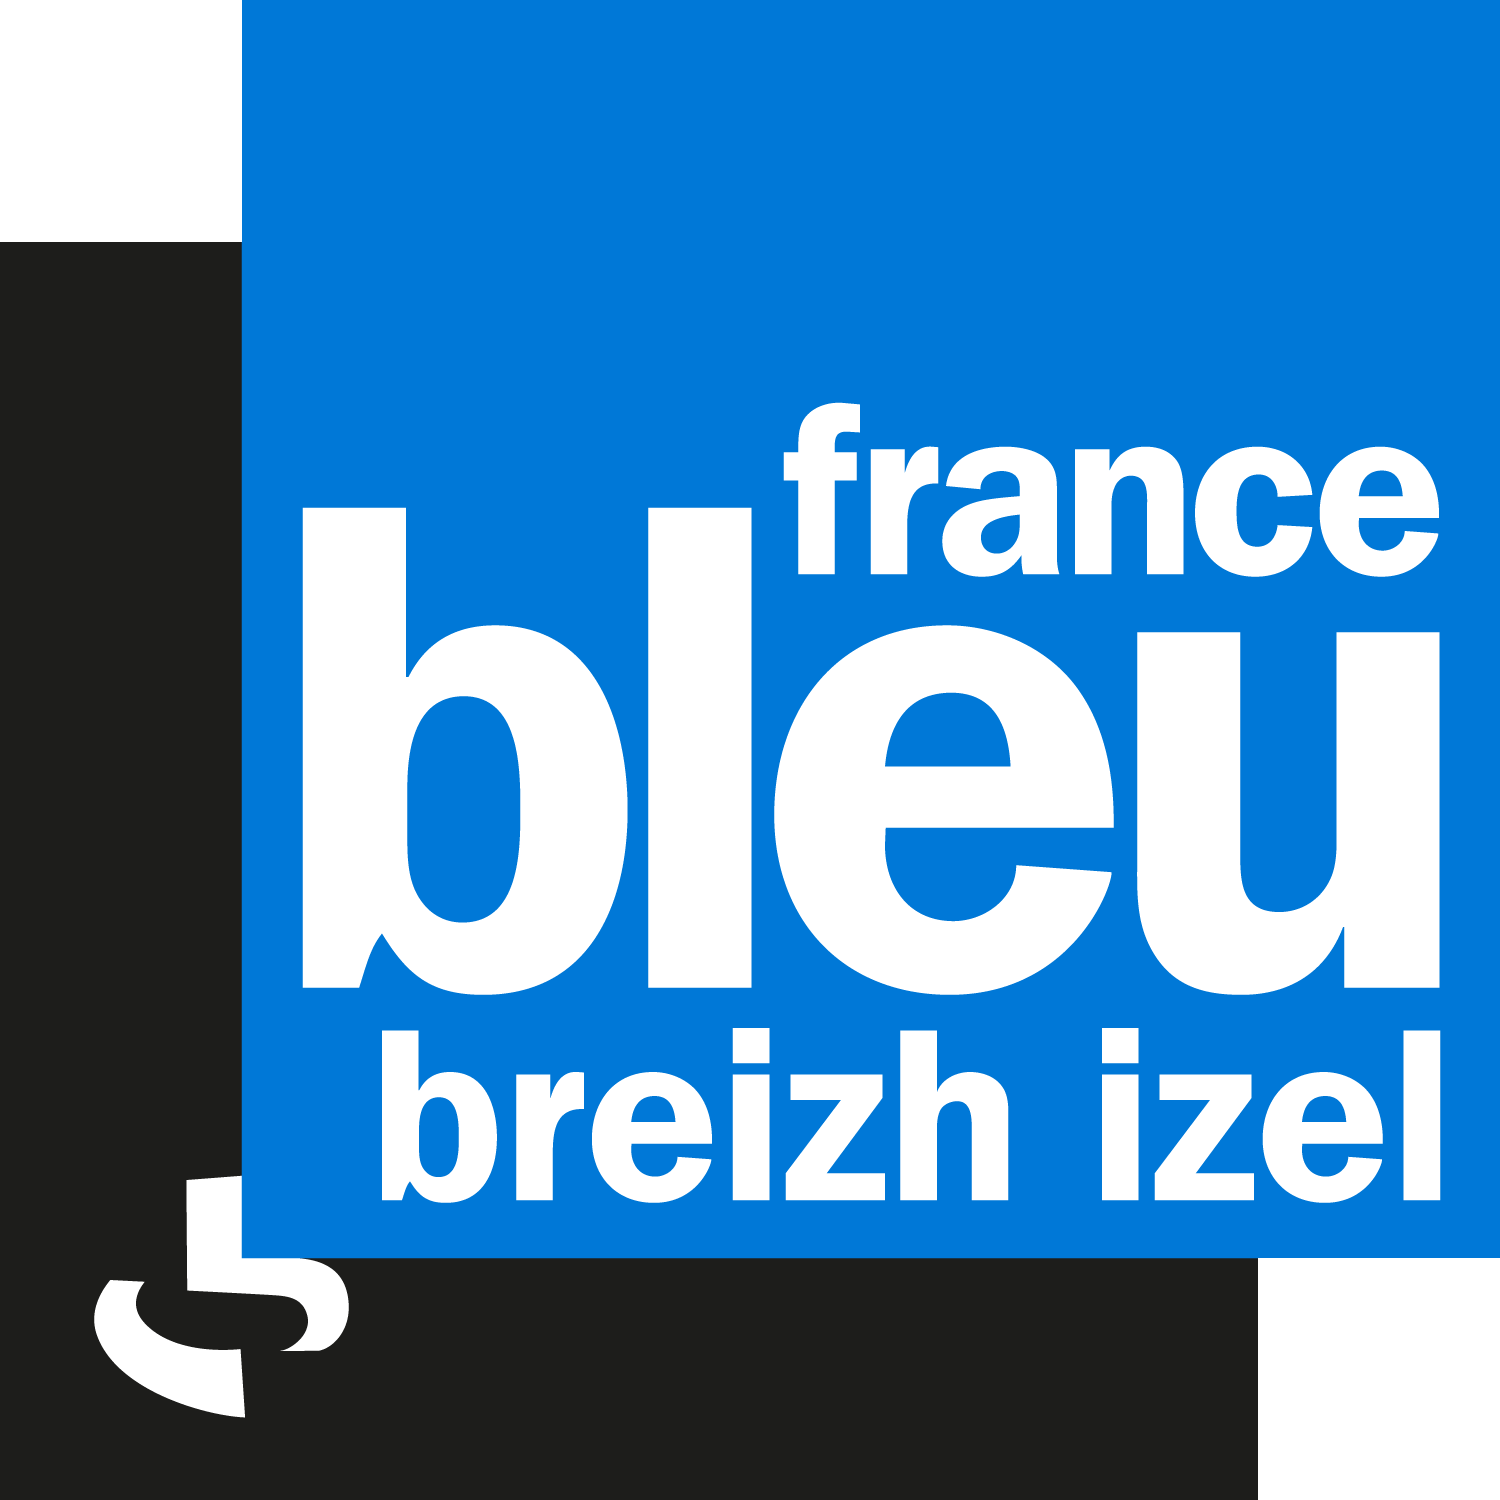 logo France Bleu Breizh Izel